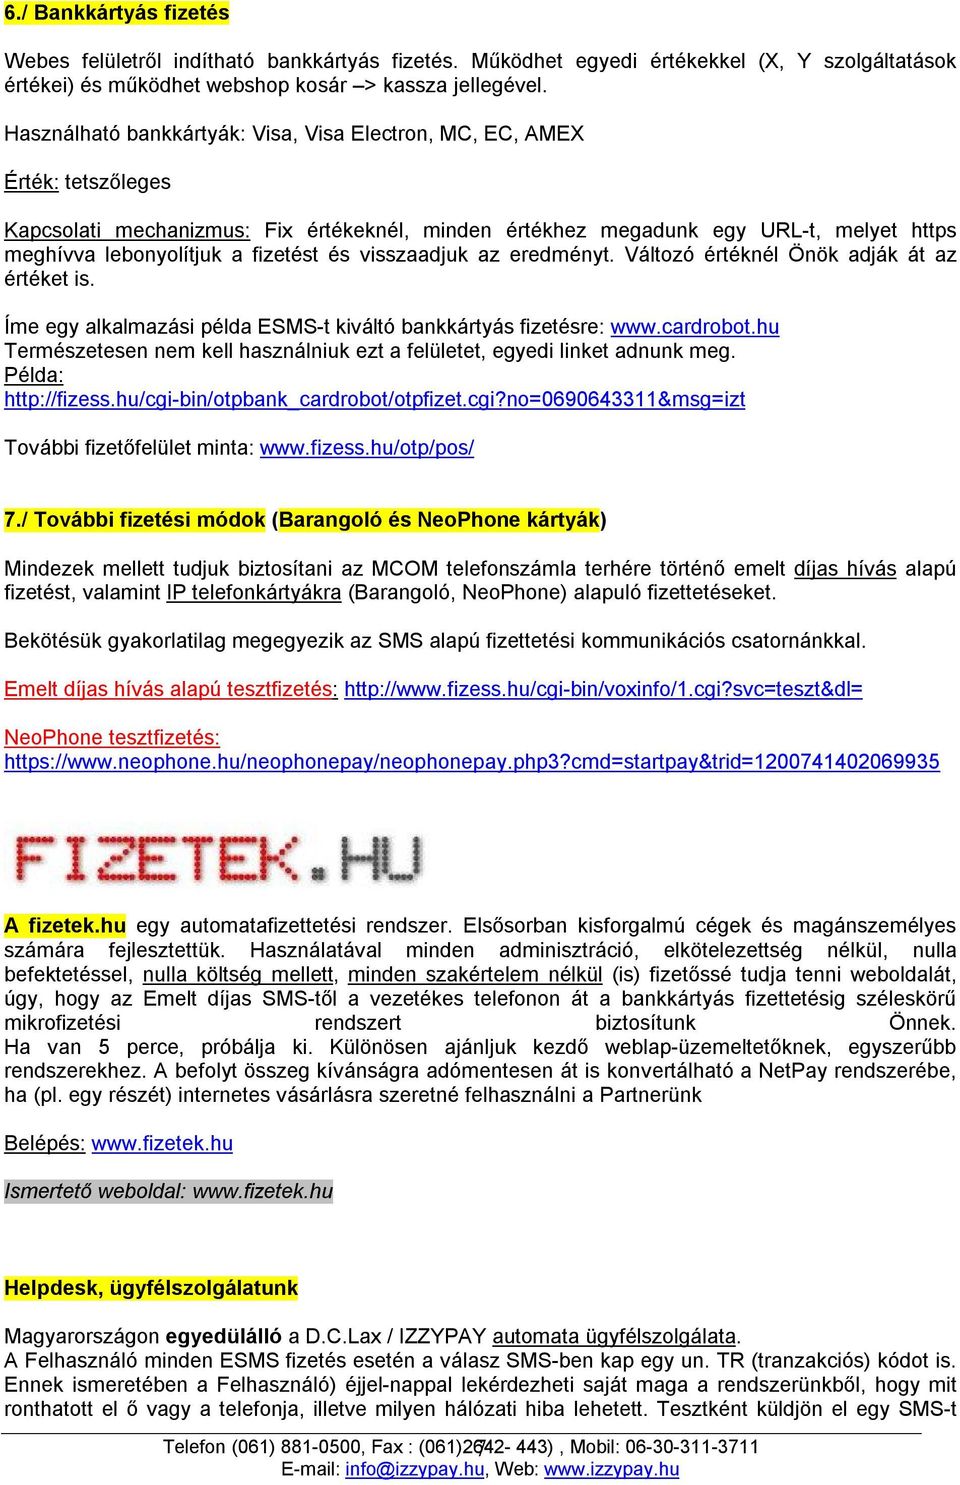 Tájékoztató az. mikrofizetési szolgáltatásokról. IzzyPay Kft. Telefon: (1)  Fax: (1) Mobil: - PDF Ingyenes letöltés